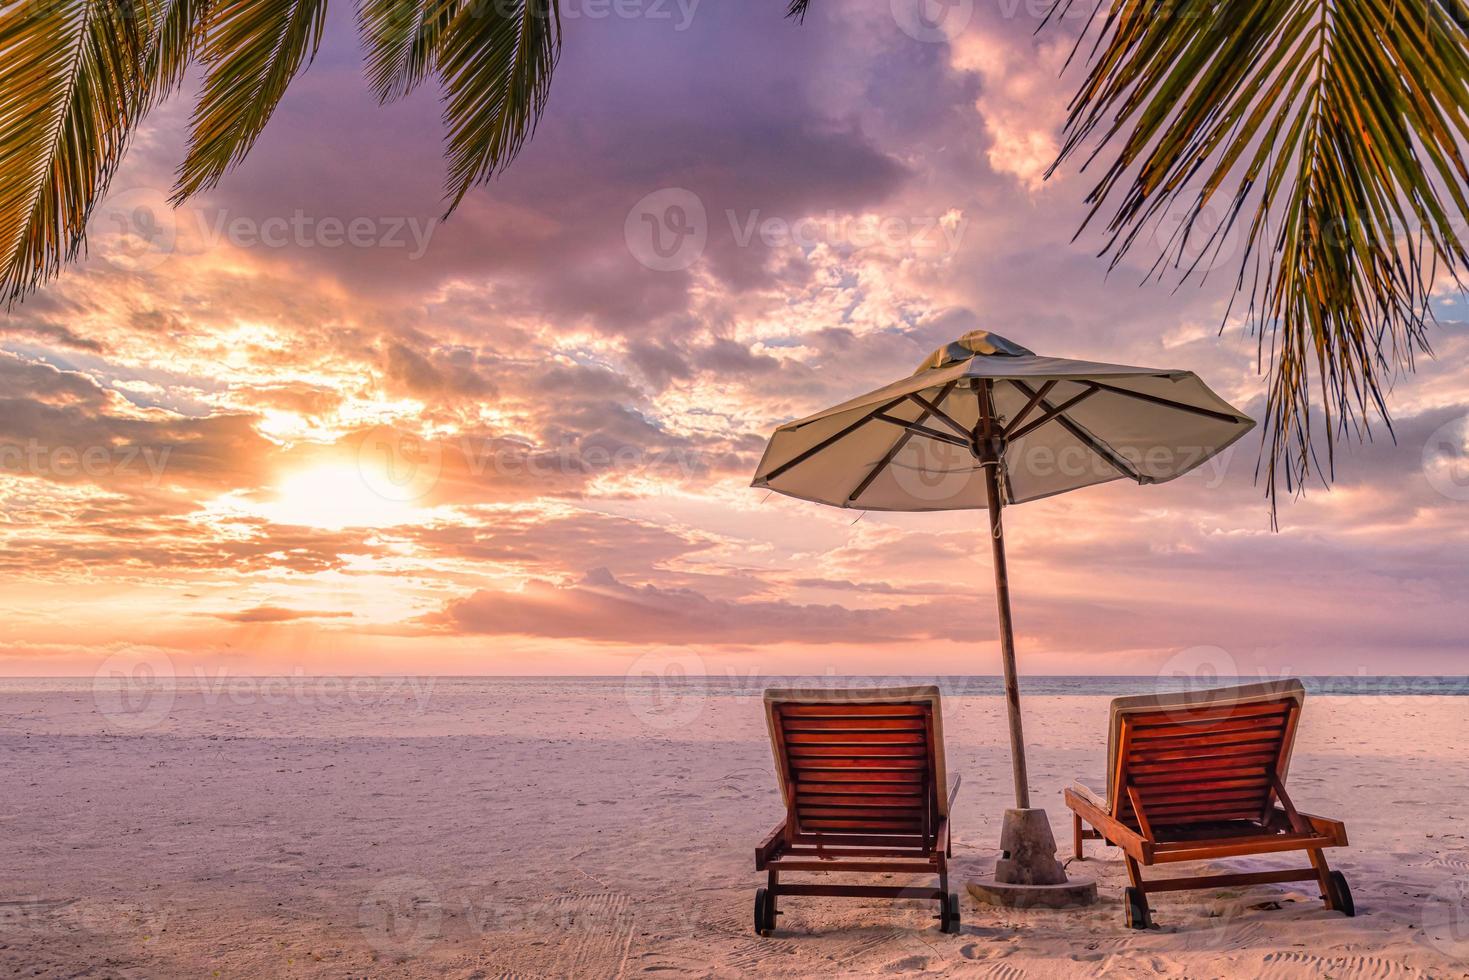 paisaje tropical perfecto para la puesta de sol, dos tumbonas, tumbonas, sombrilla bajo una palmera. arena blanca, vista al mar con horizonte, colorido cielo crepuscular, calma y relajación. hotel inspirador en la playa foto